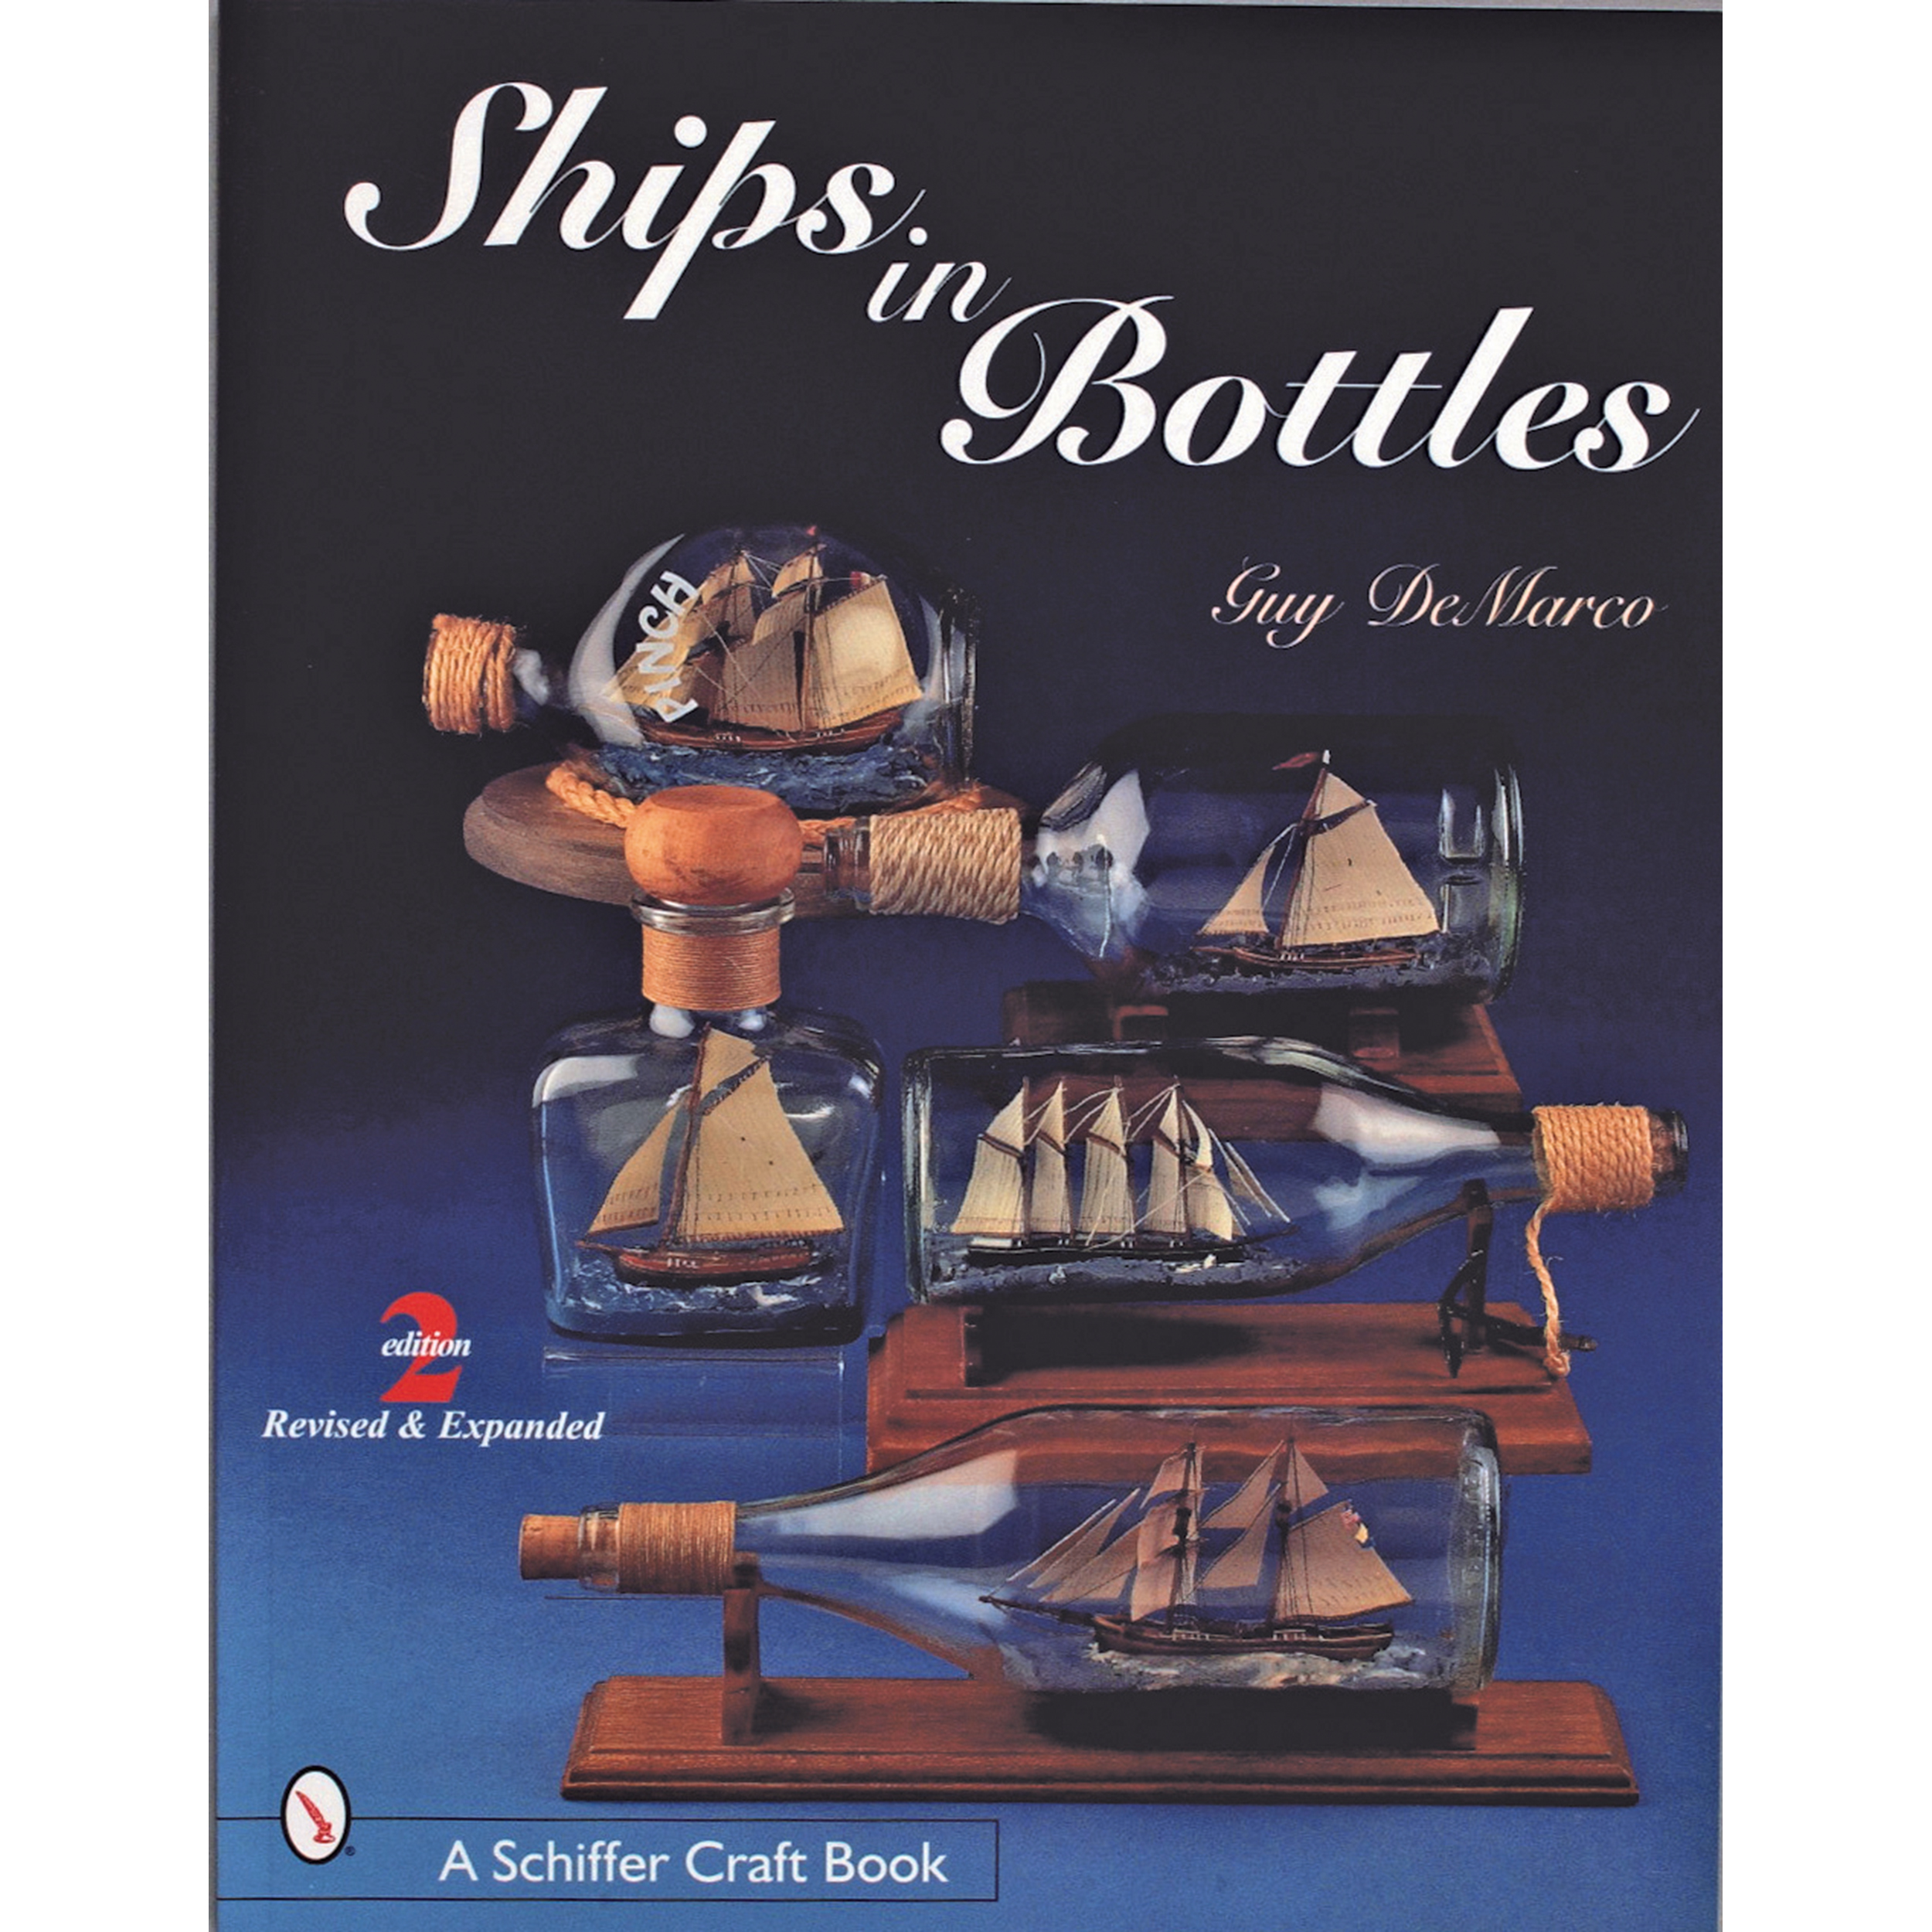 Ships In Bottles